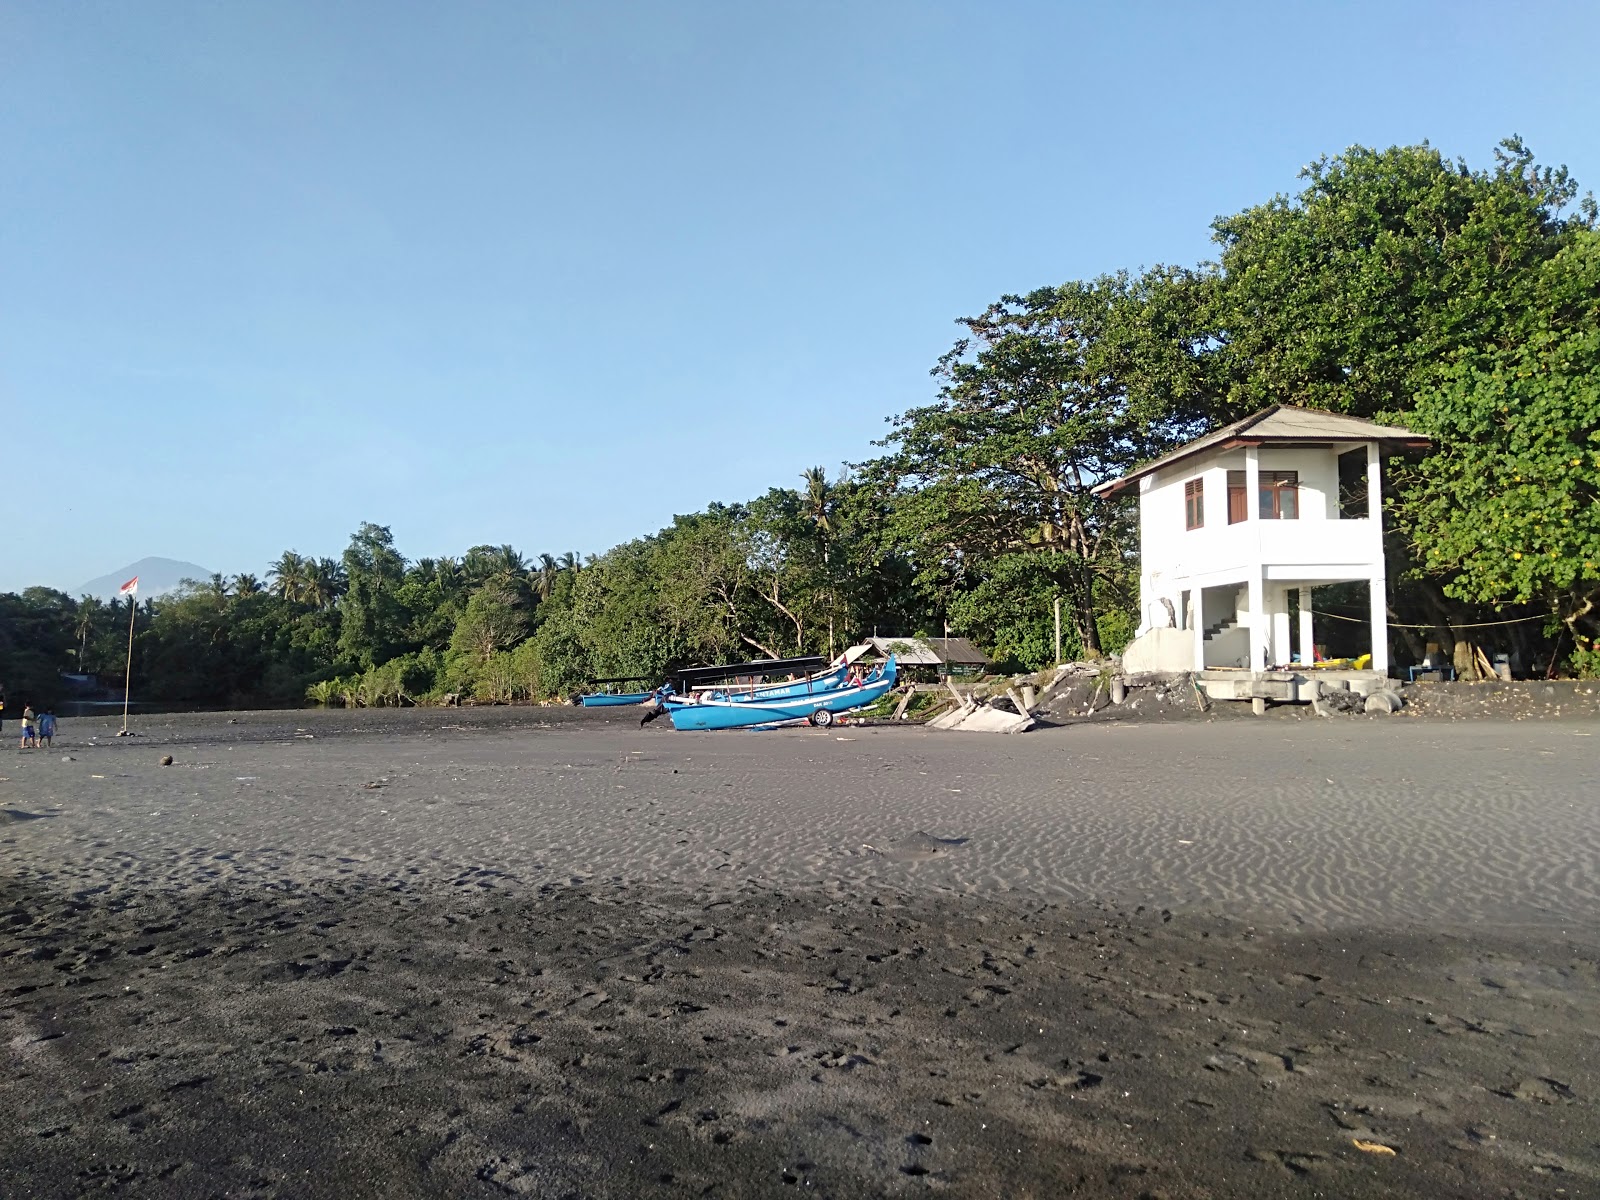 Fotografija Kelecung Beach in naselje